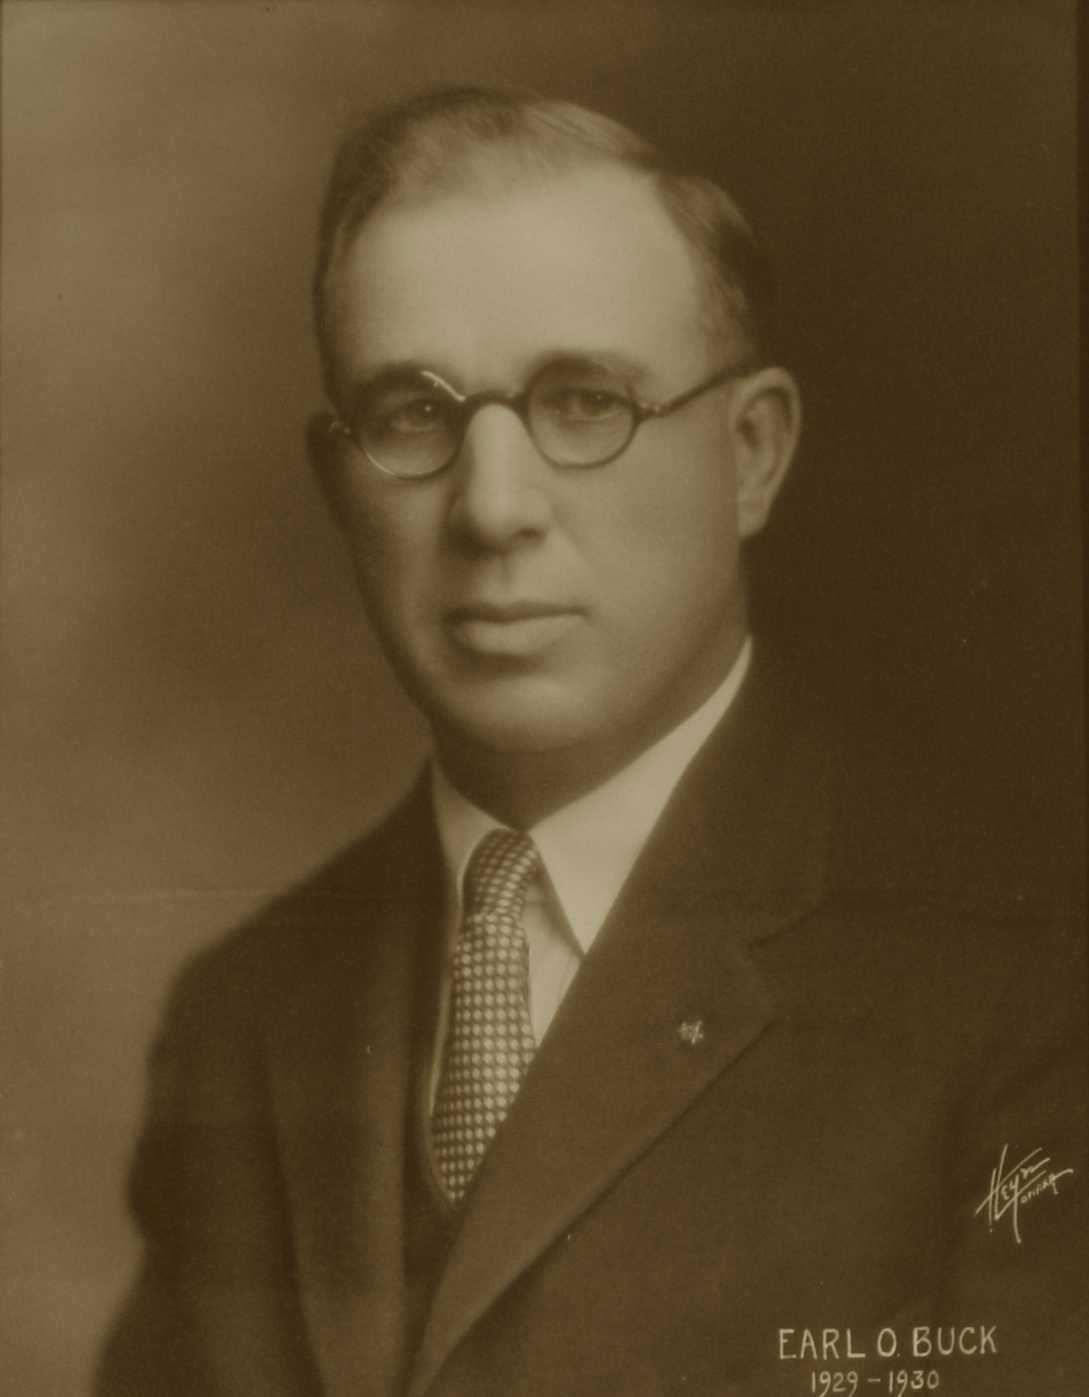 Earl O. Buck, 1929-1930